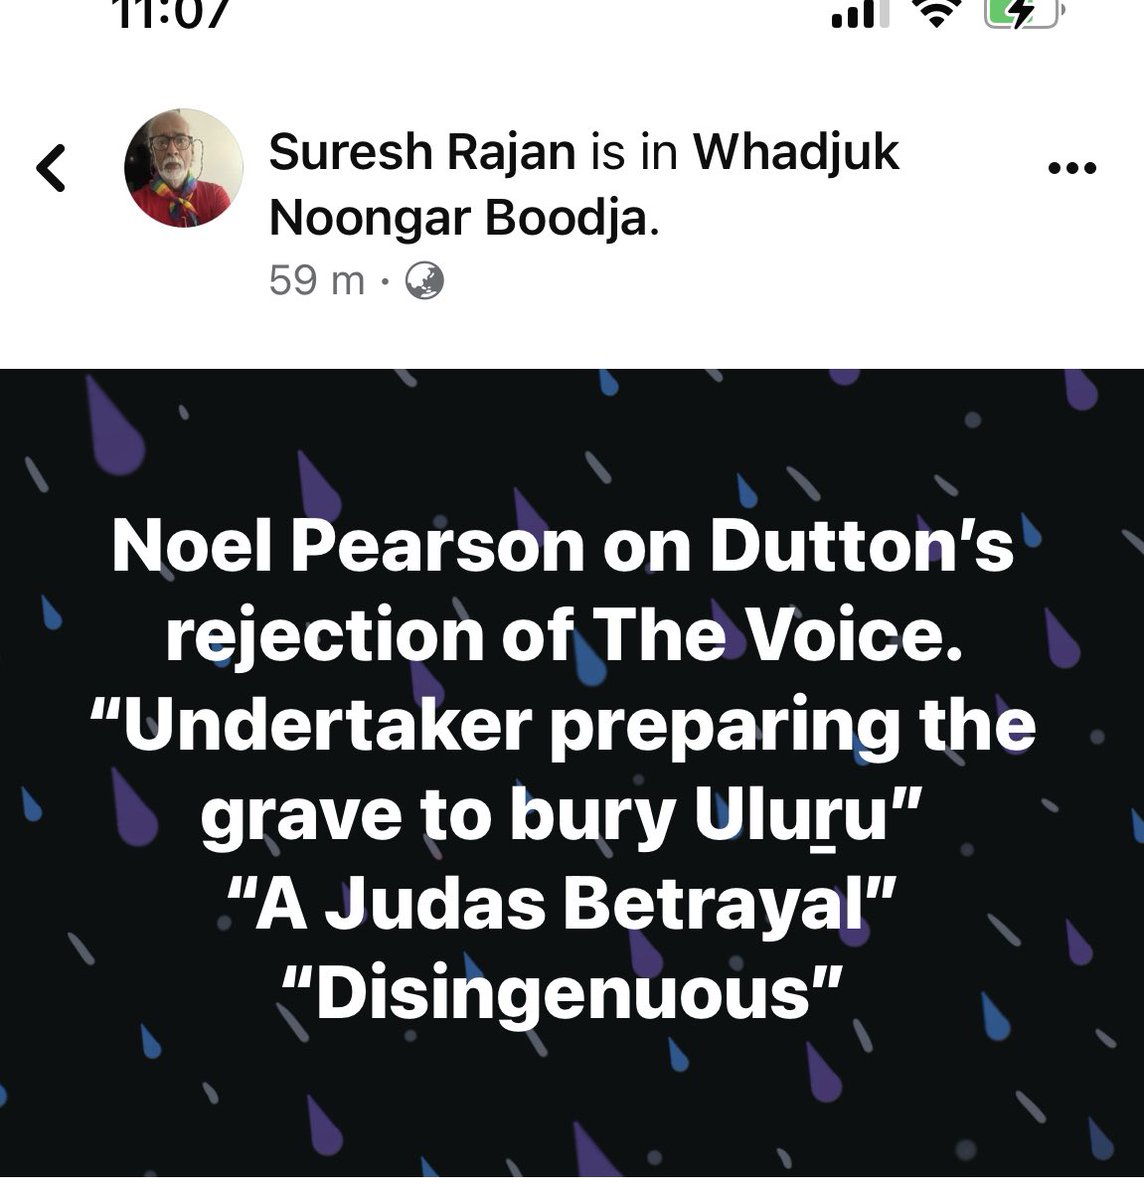 #DuttontheUndertaker #DuttonDressedAsLamb
#LiberalFail
#TheVoice